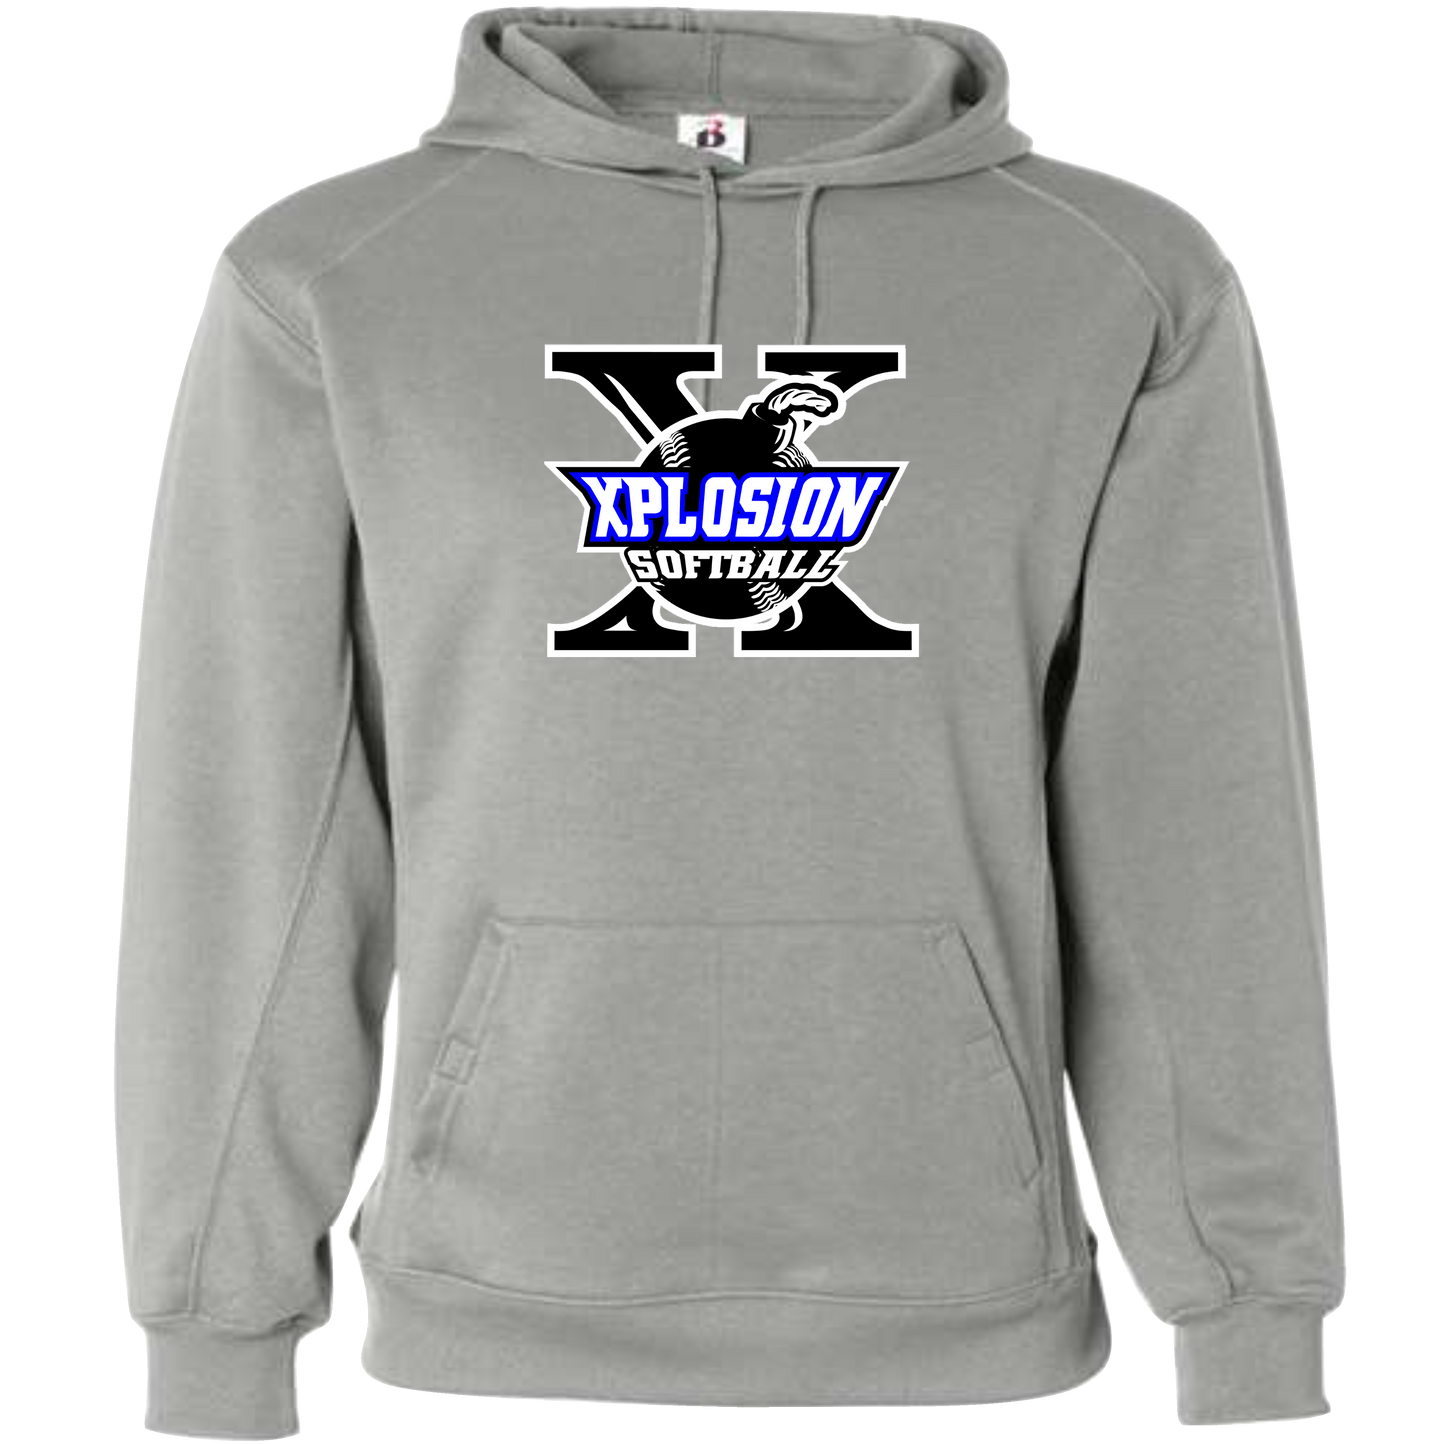 Unisex Badger Performance Fleece Hooded Sweatshirt (Polyester)